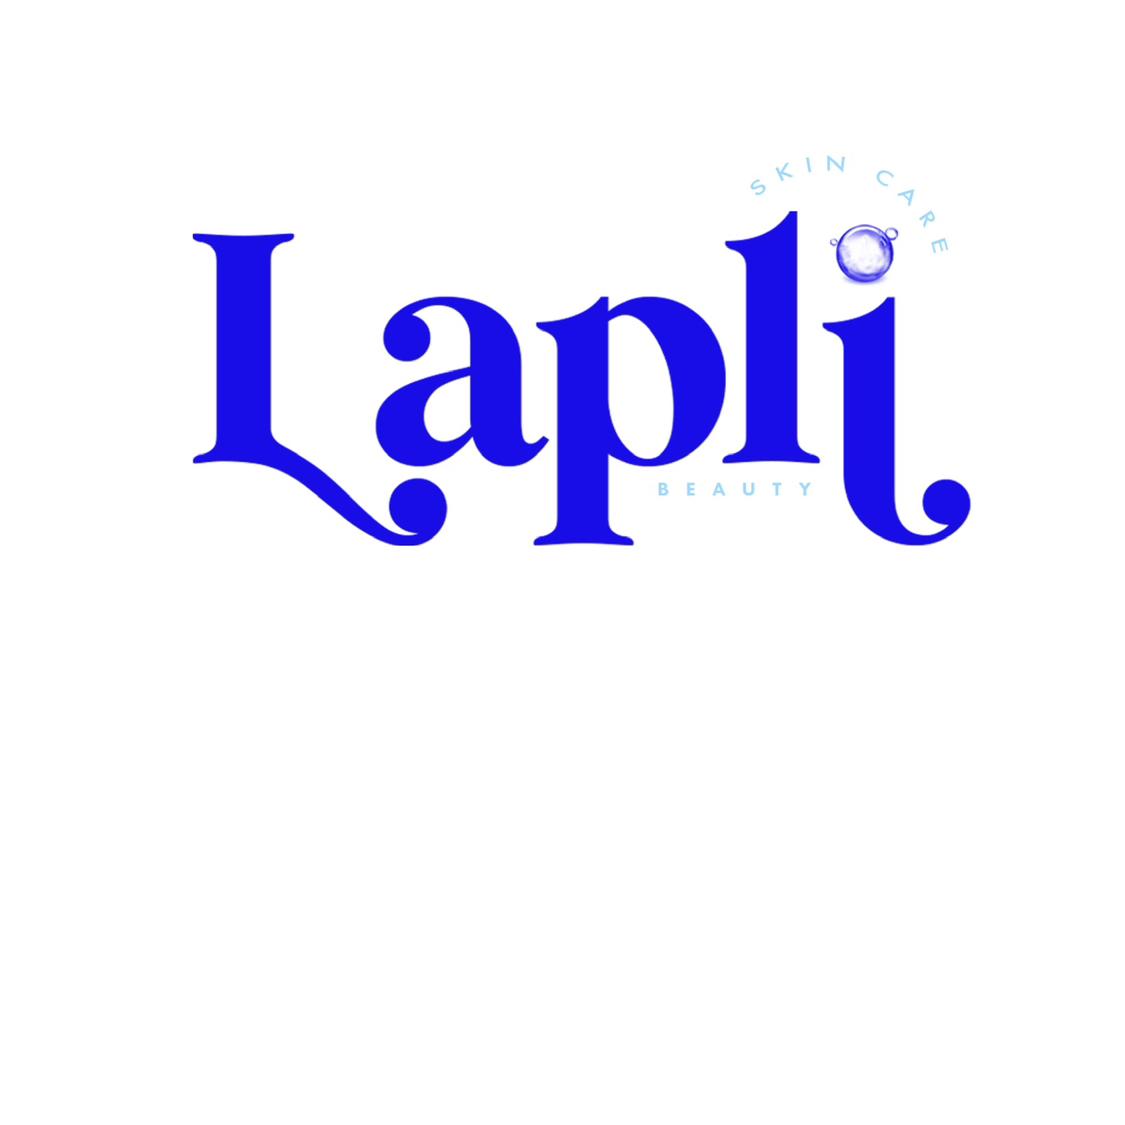 Lapli Beauty 's images